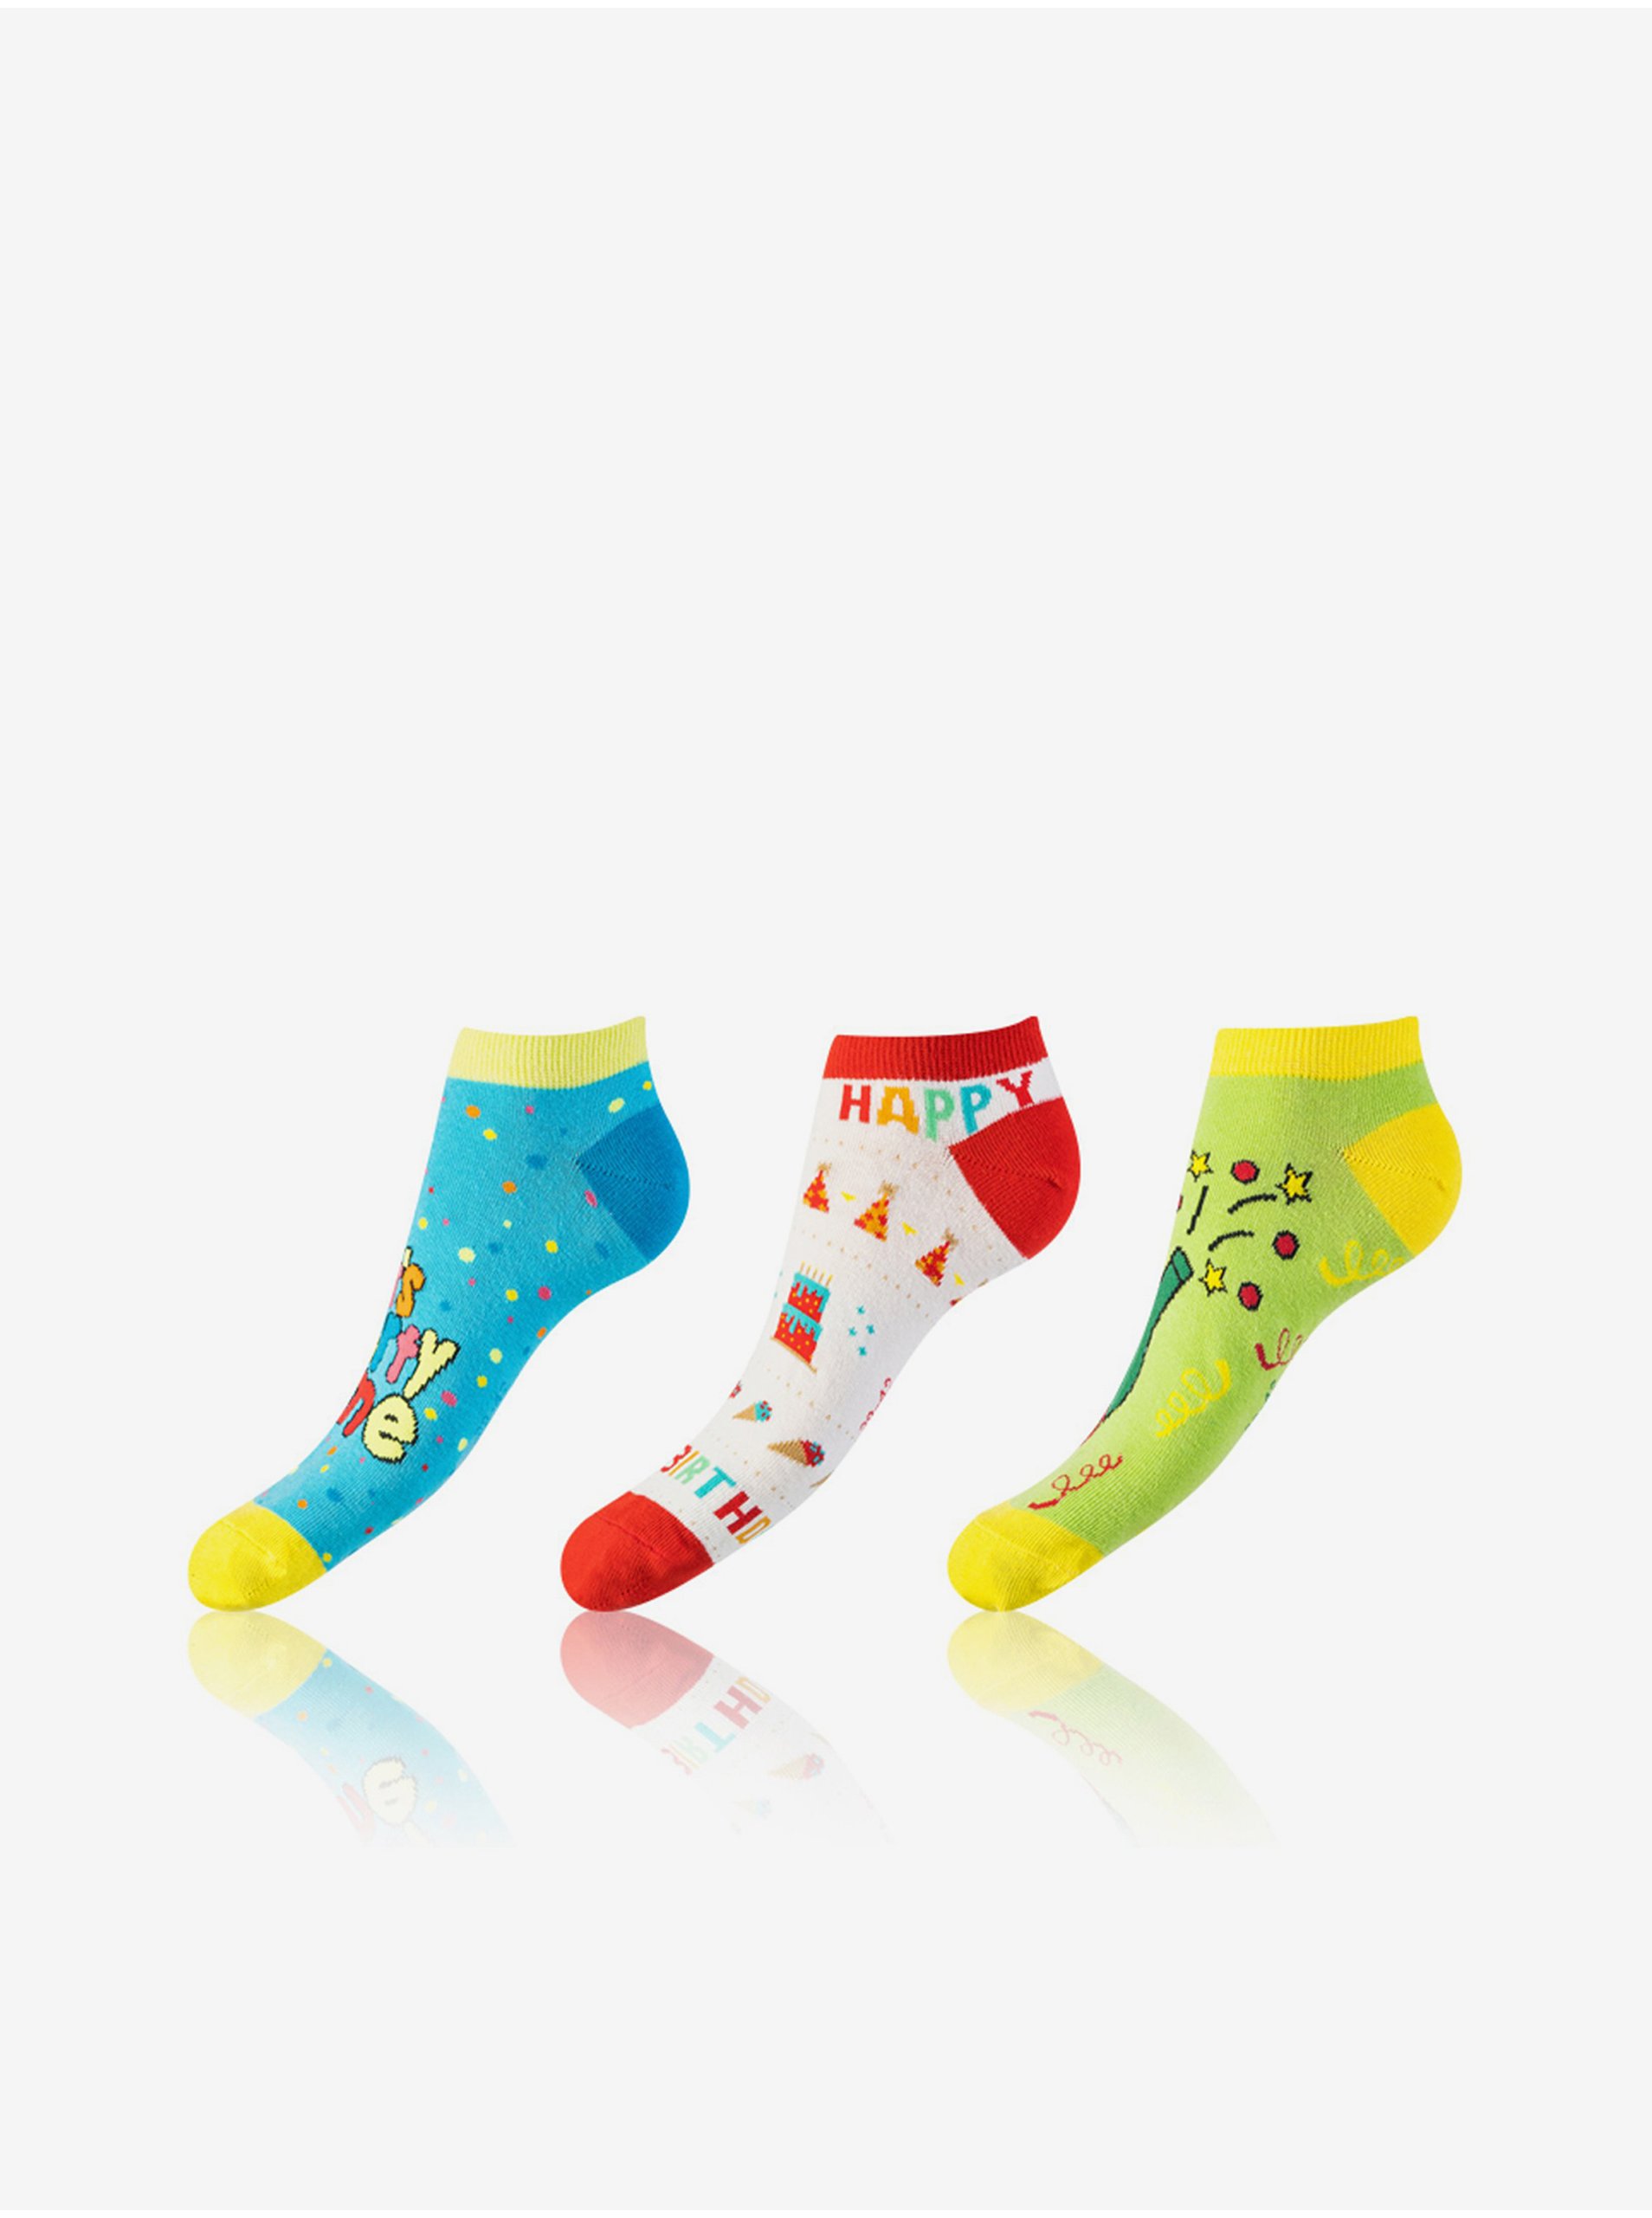 Levně Sada tří unisex vzorovaných ponožek v modré, červené a zelené barvě Bellinda CRAZY IN-SHOE SOCKS 3x